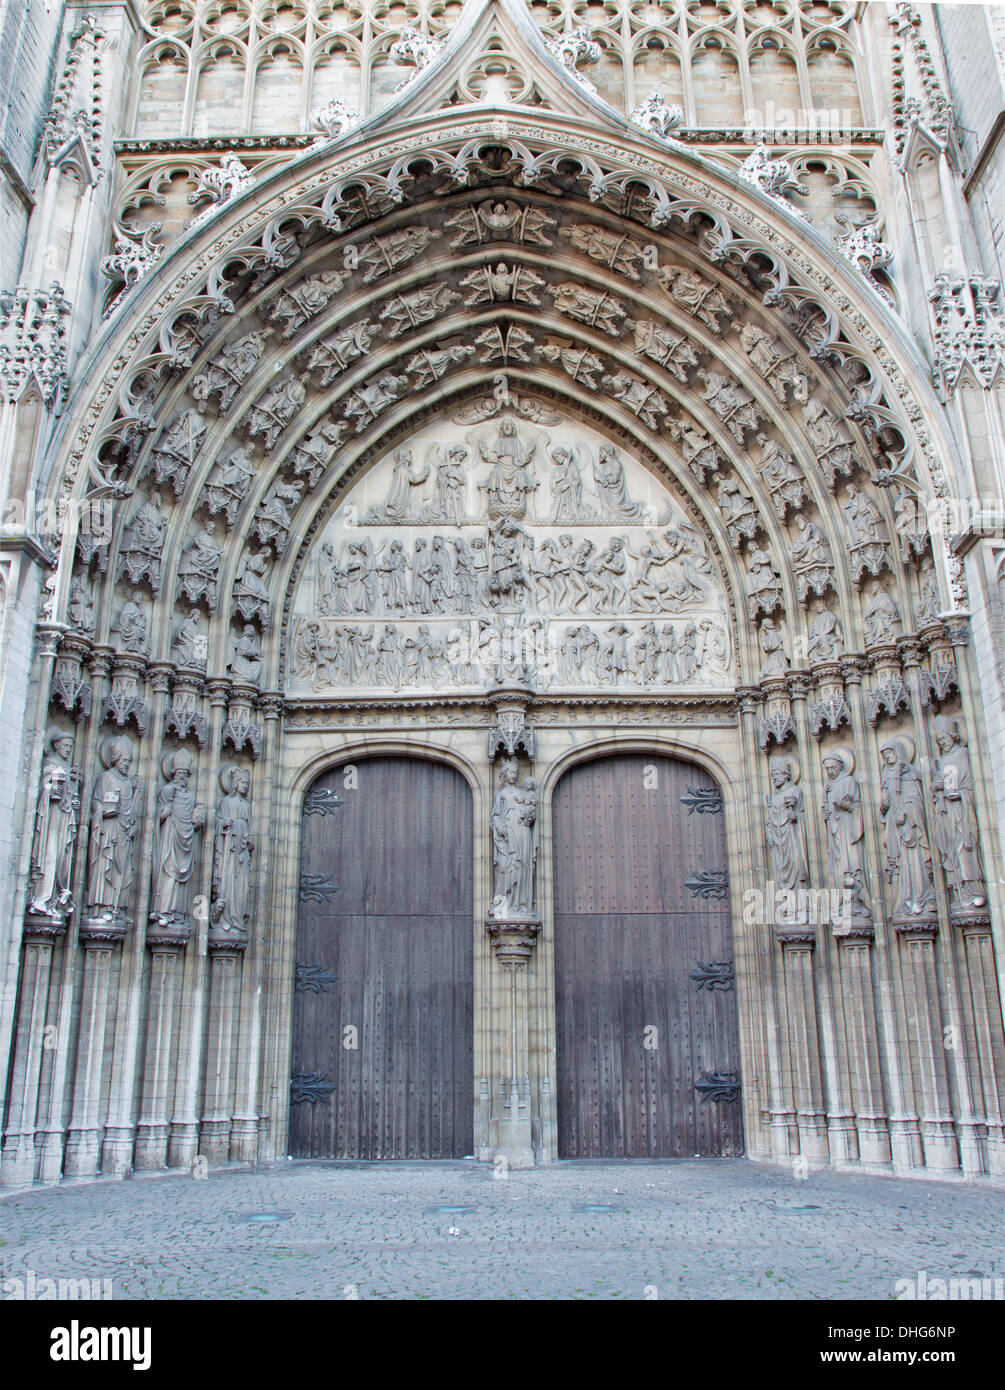 Anversa, Belgio - 5 settembre: portale principale della cattedrale di Nostra Signora con il rilievo di ultima sentenza Foto Stock